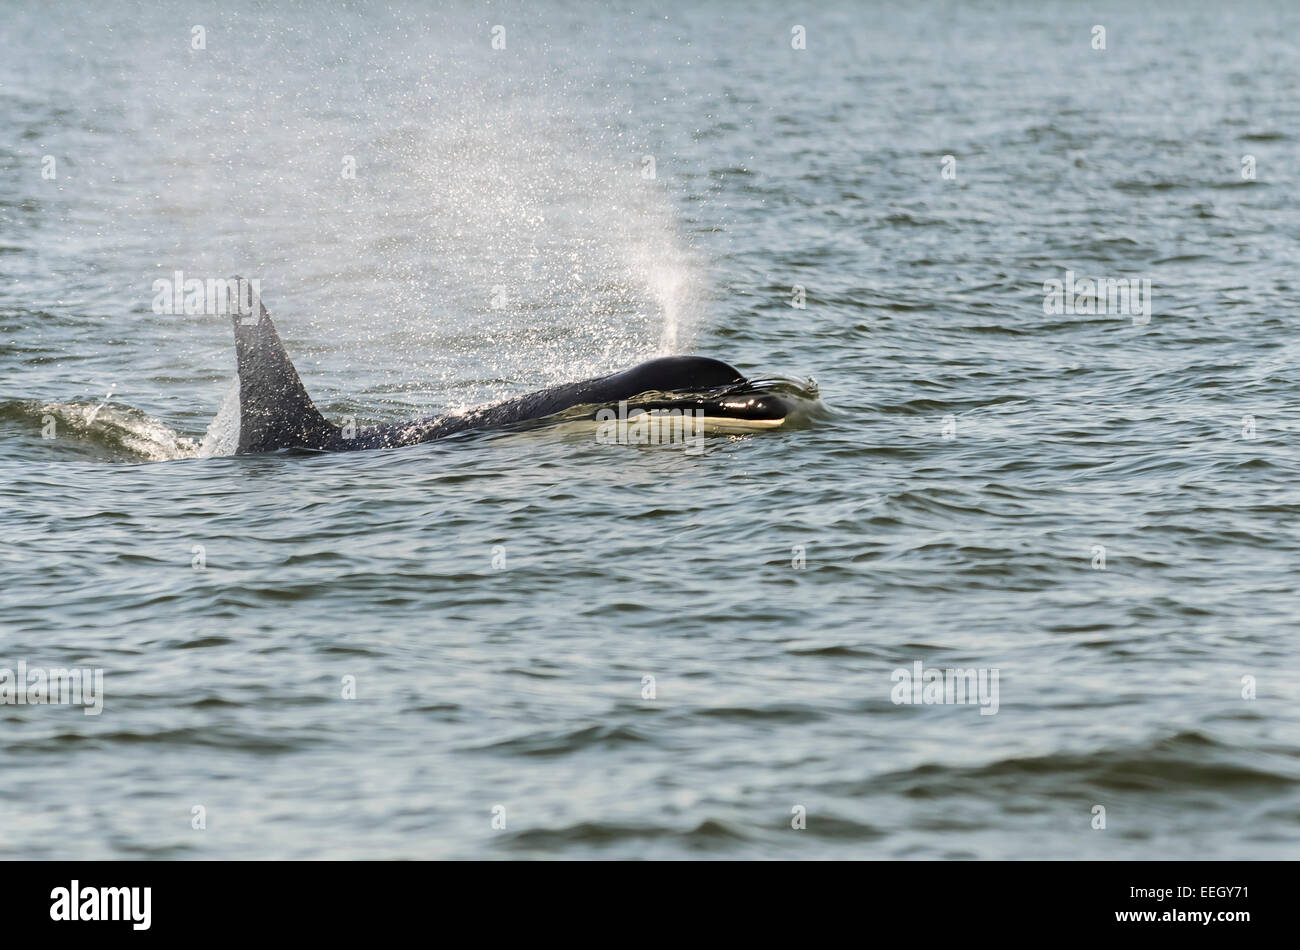 Orca résidents du Sud, J2, connu sous le nom de grand-mère, a vécu jusqu'à plus de 100 ans. Groupe J , Orcinus orca, British Columbia, Canada Banque D'Images